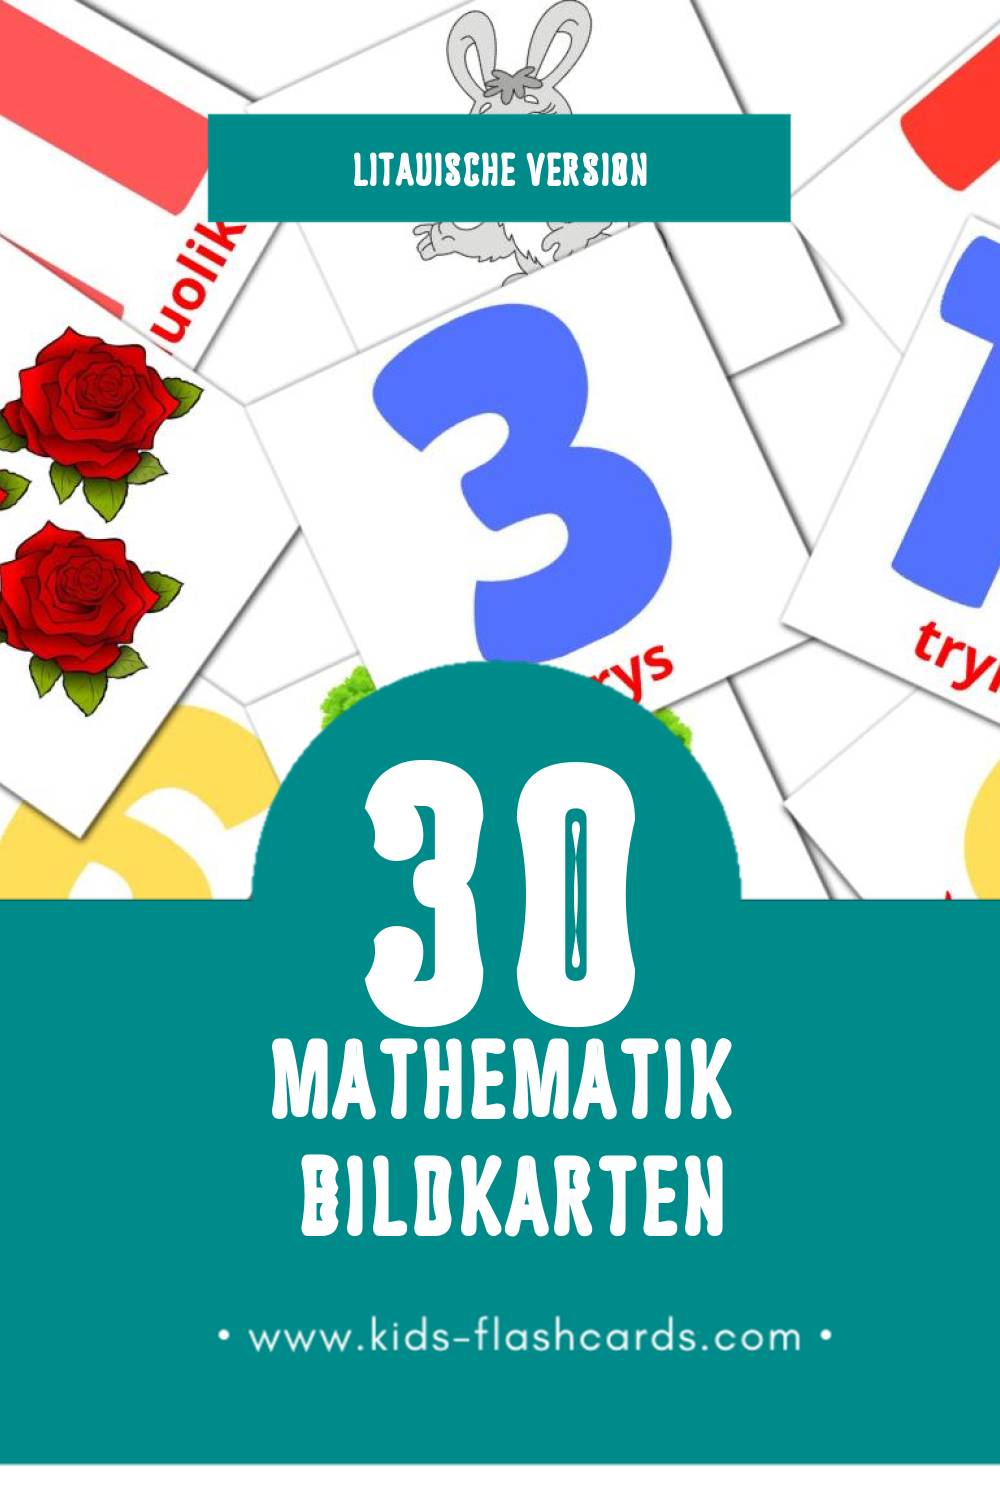 Visual Matematika  Flashcards für Kleinkinder (30 Karten in Litauisch)